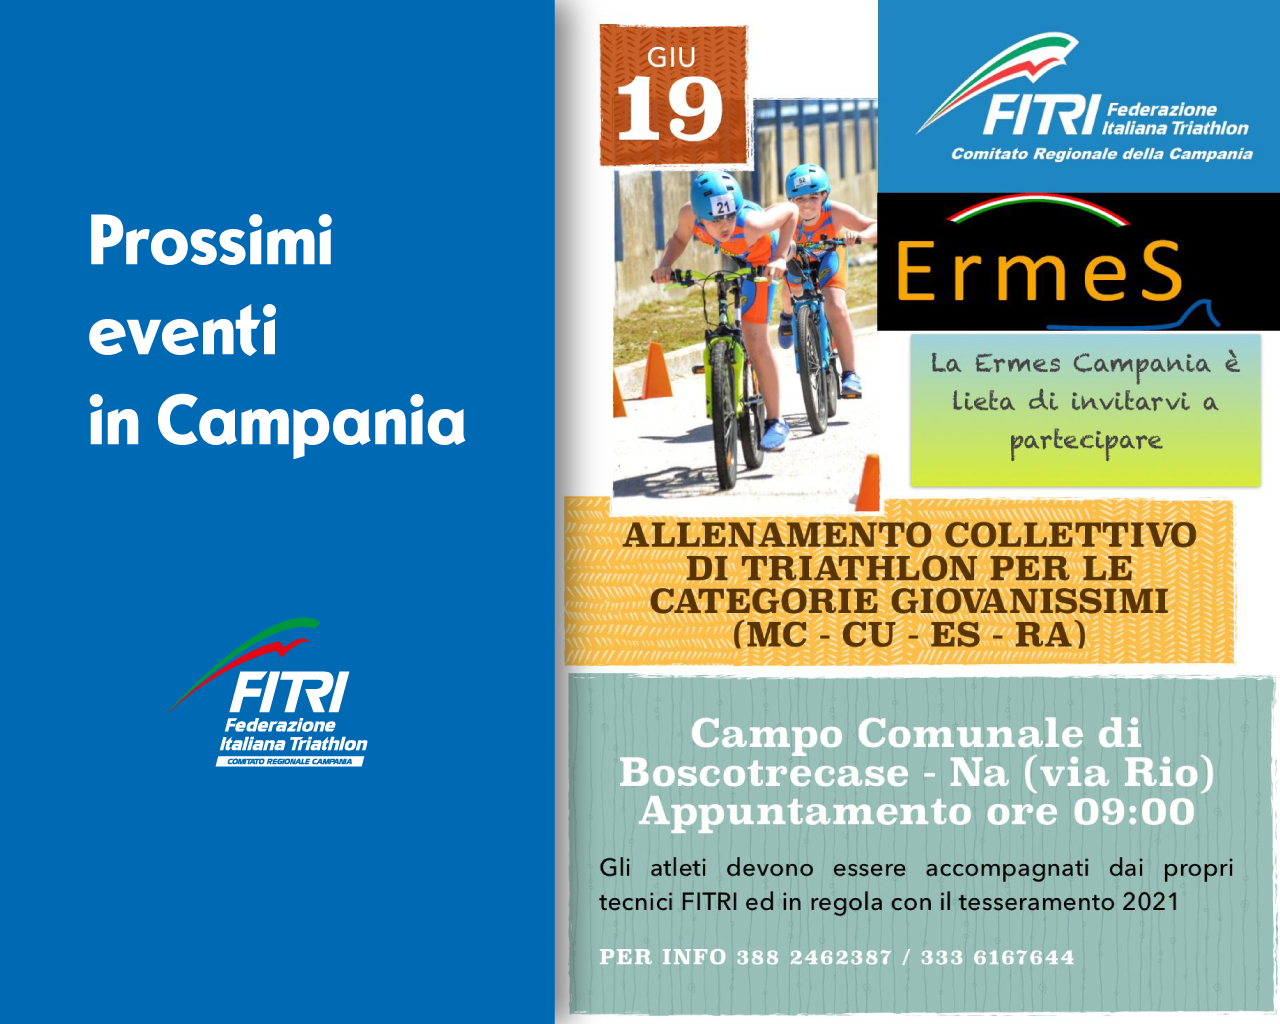 images/campania/medium/cover-eventi---ermes-19giugno2021-FITRI-Campania.png